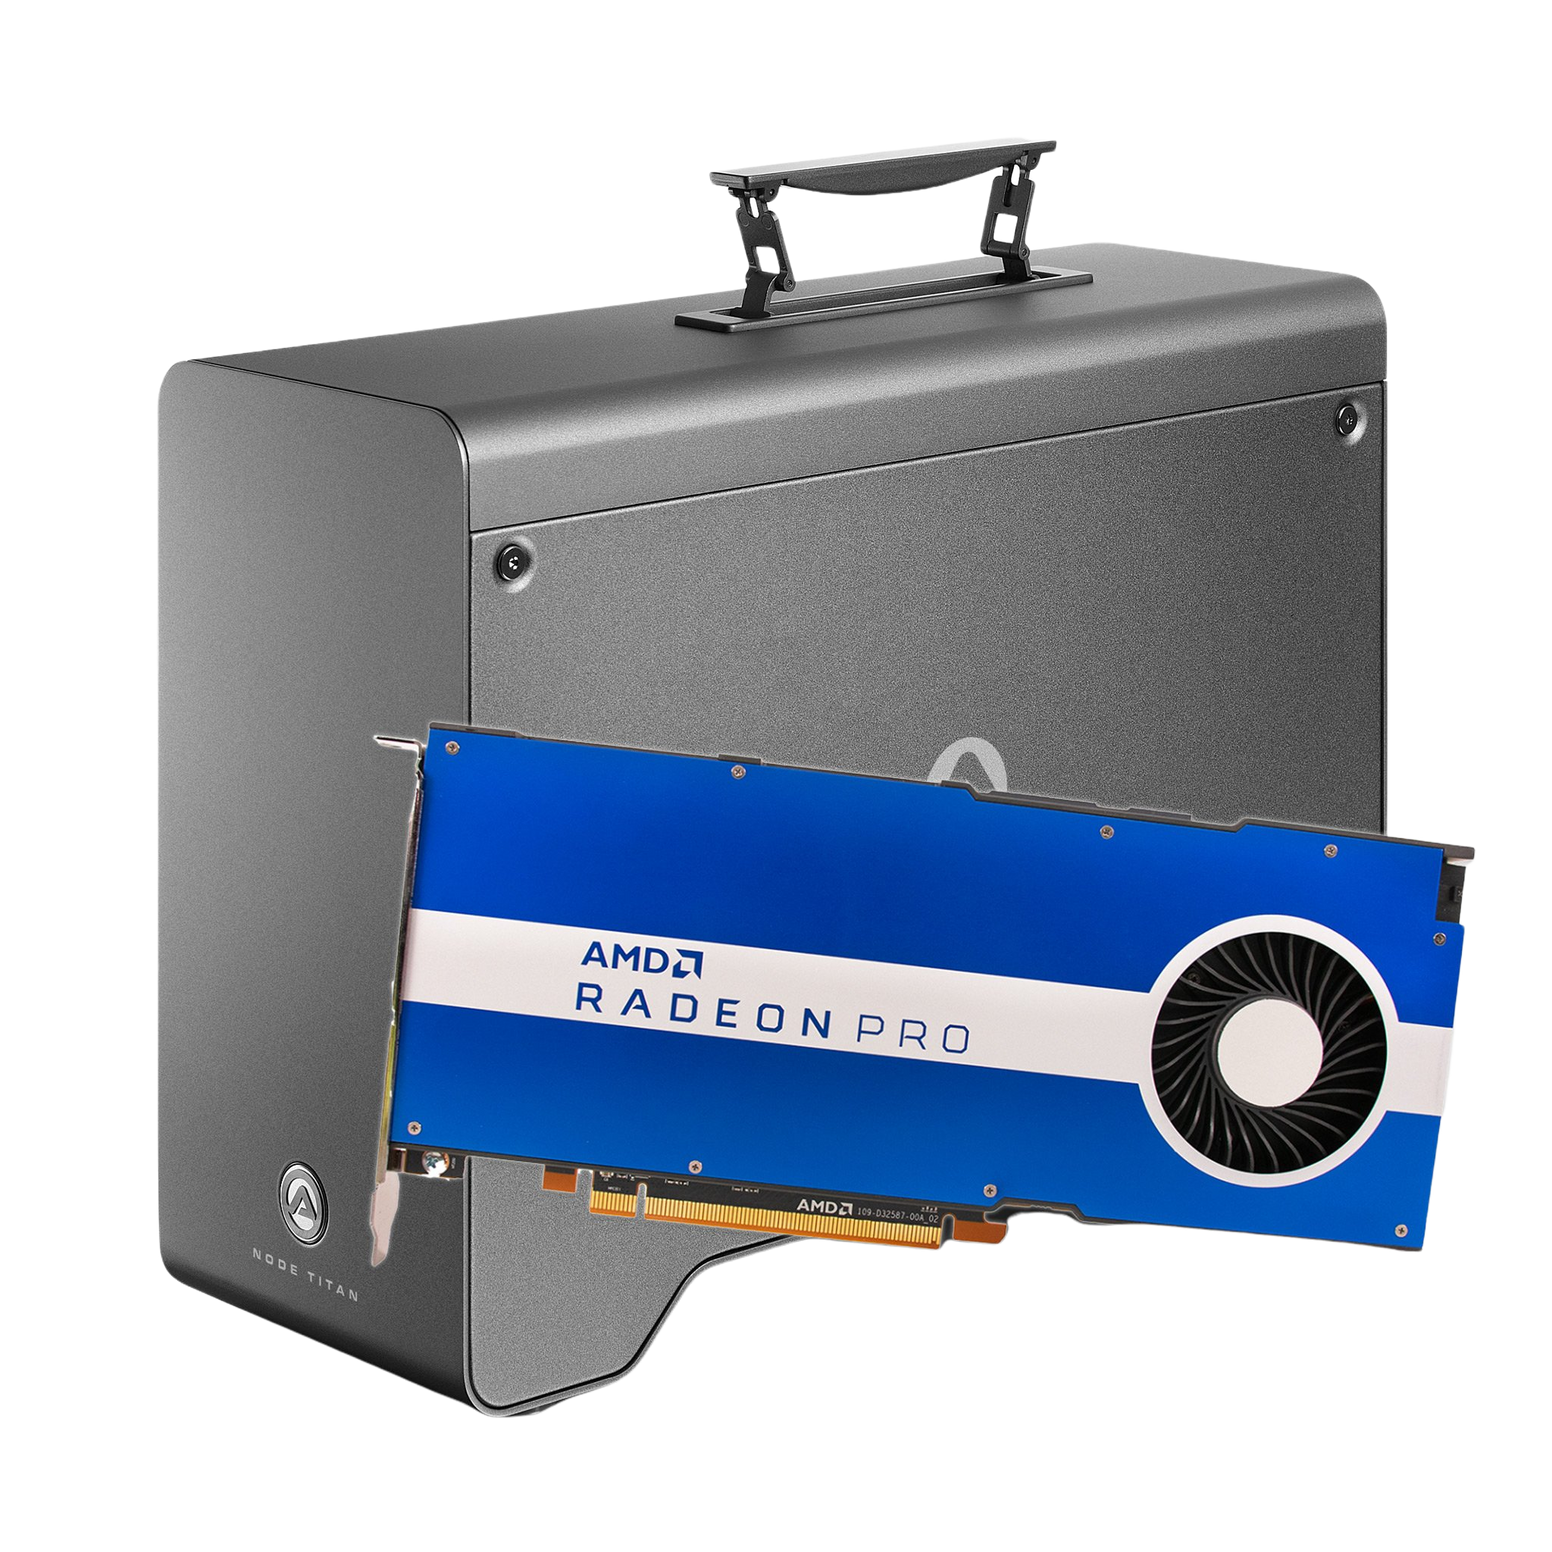 AKiTiO Node Titan Thunderbolt 3 eGPU Enclosure + Radeon Pro W5700 Graphics Card Bundle - Discontinued